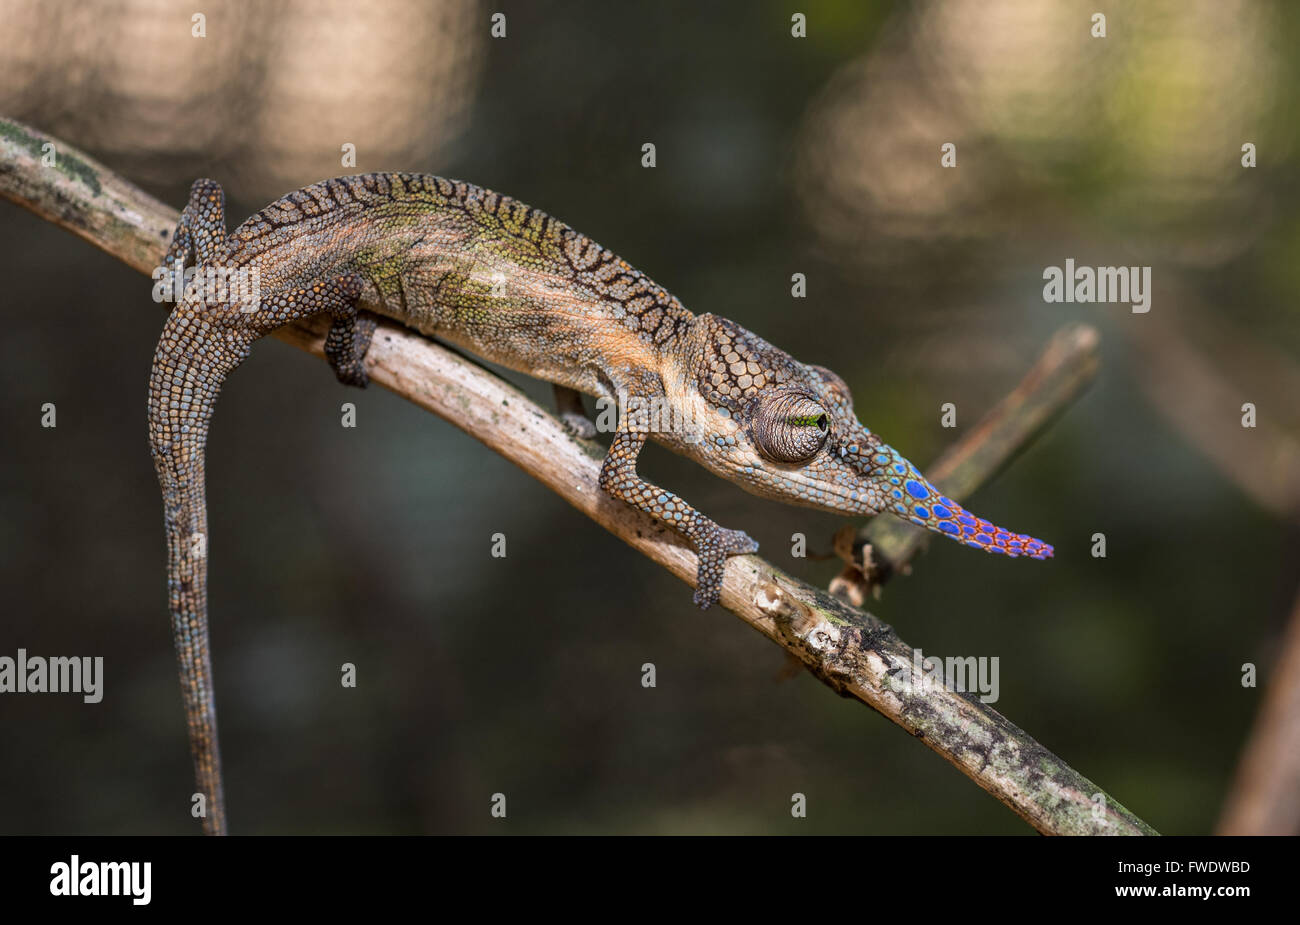 Colorful chameleon of Madagascar Stock Photo